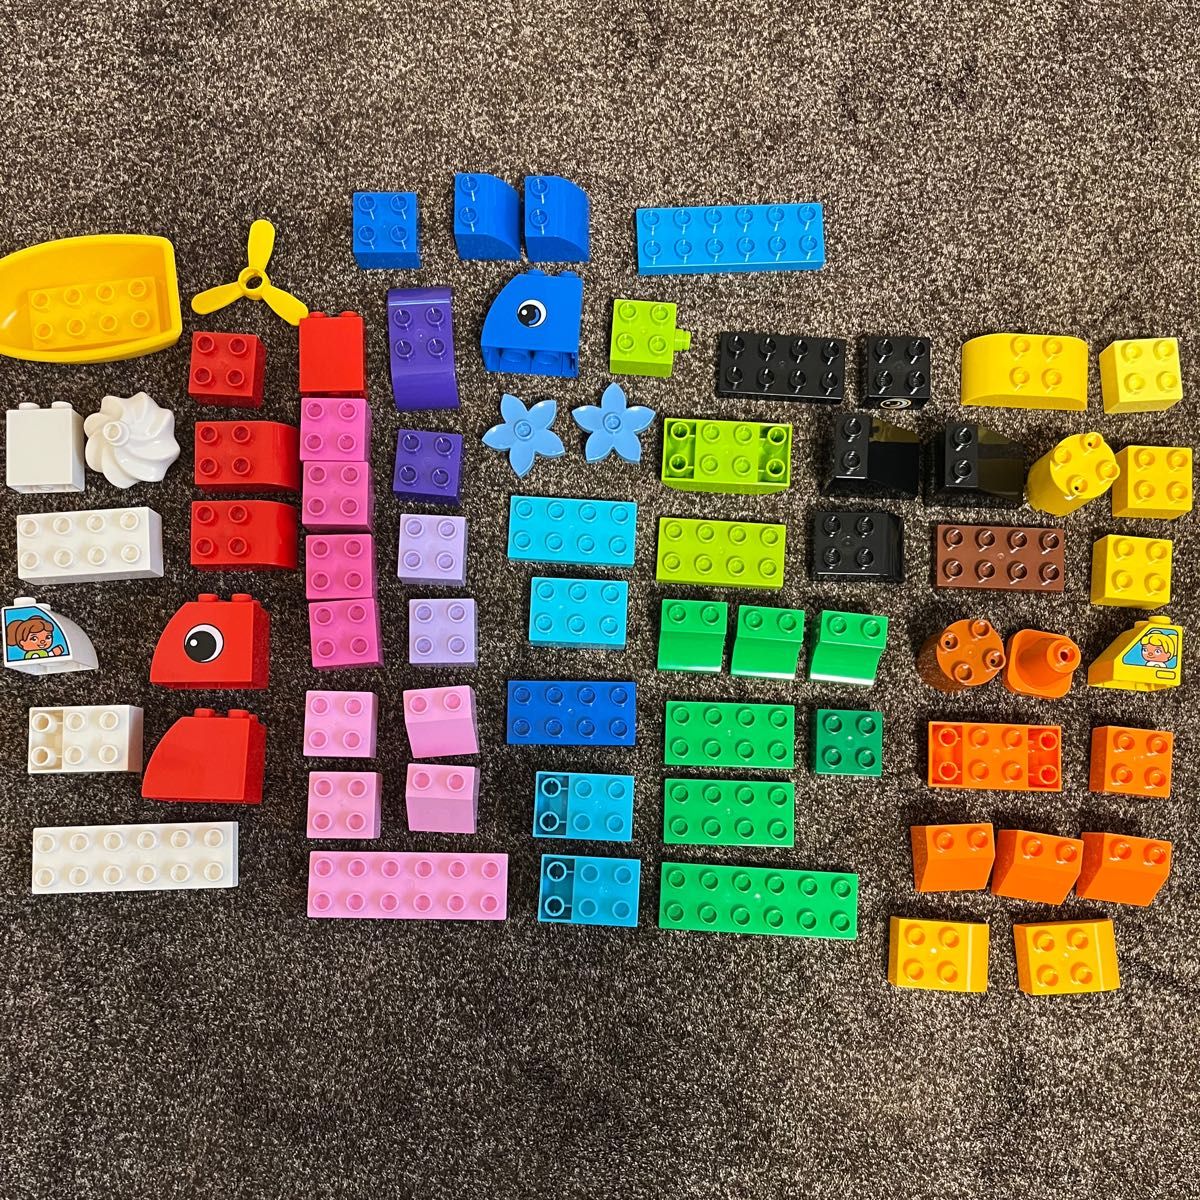 レゴ(LEGO) デュプロ デュプロ(R)のいろいろアイデアボックス 10865 